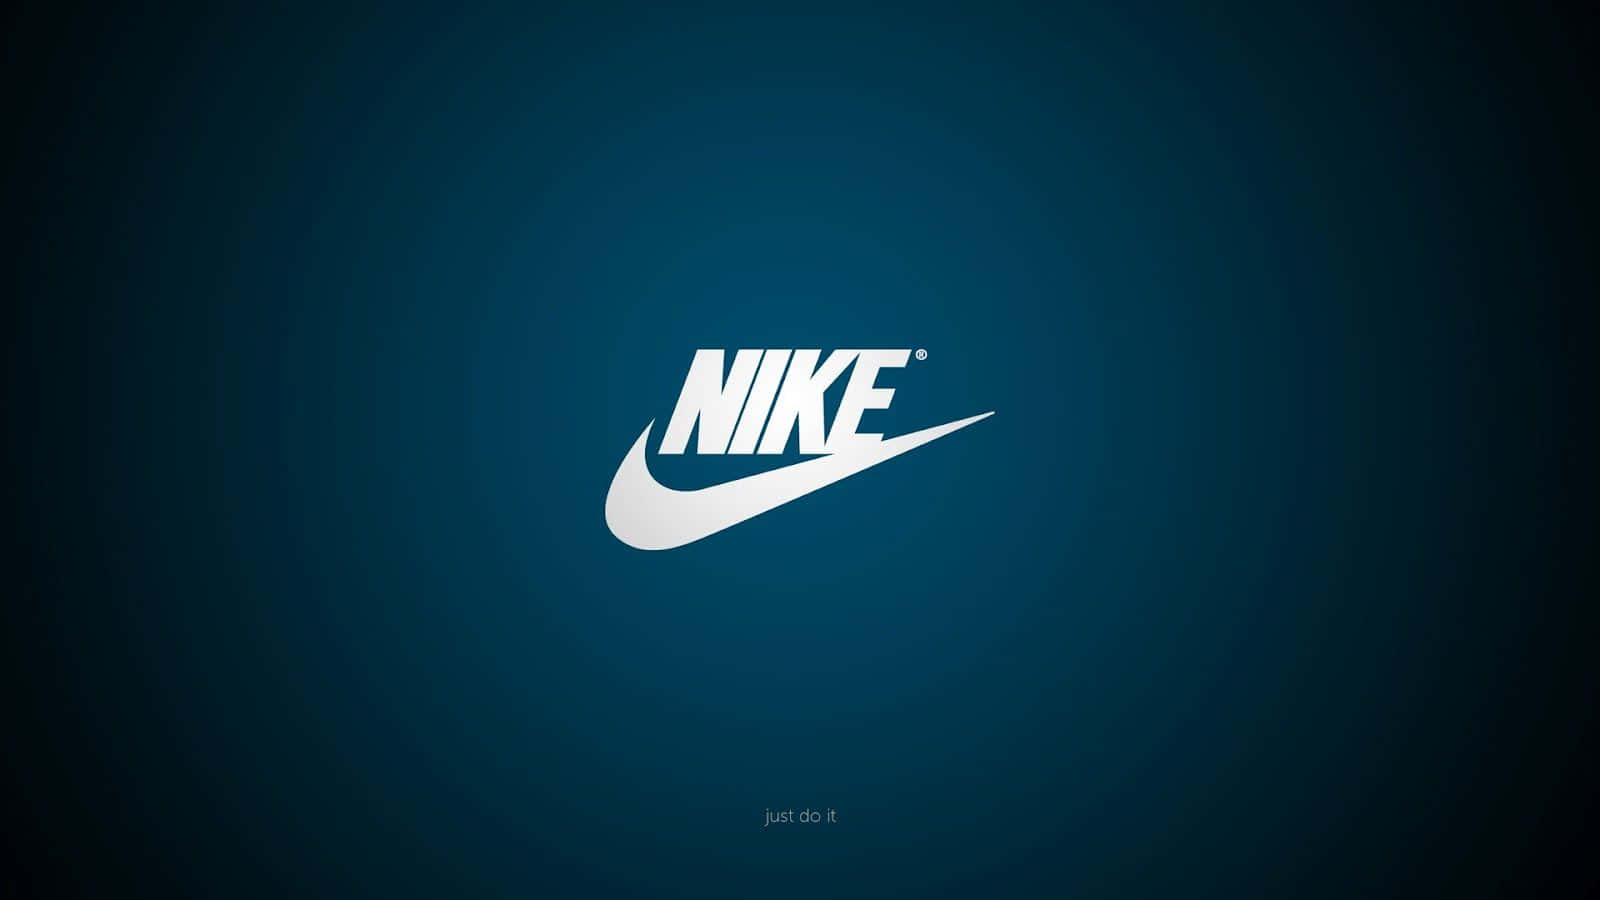 Nikebox-logo Wallpaper